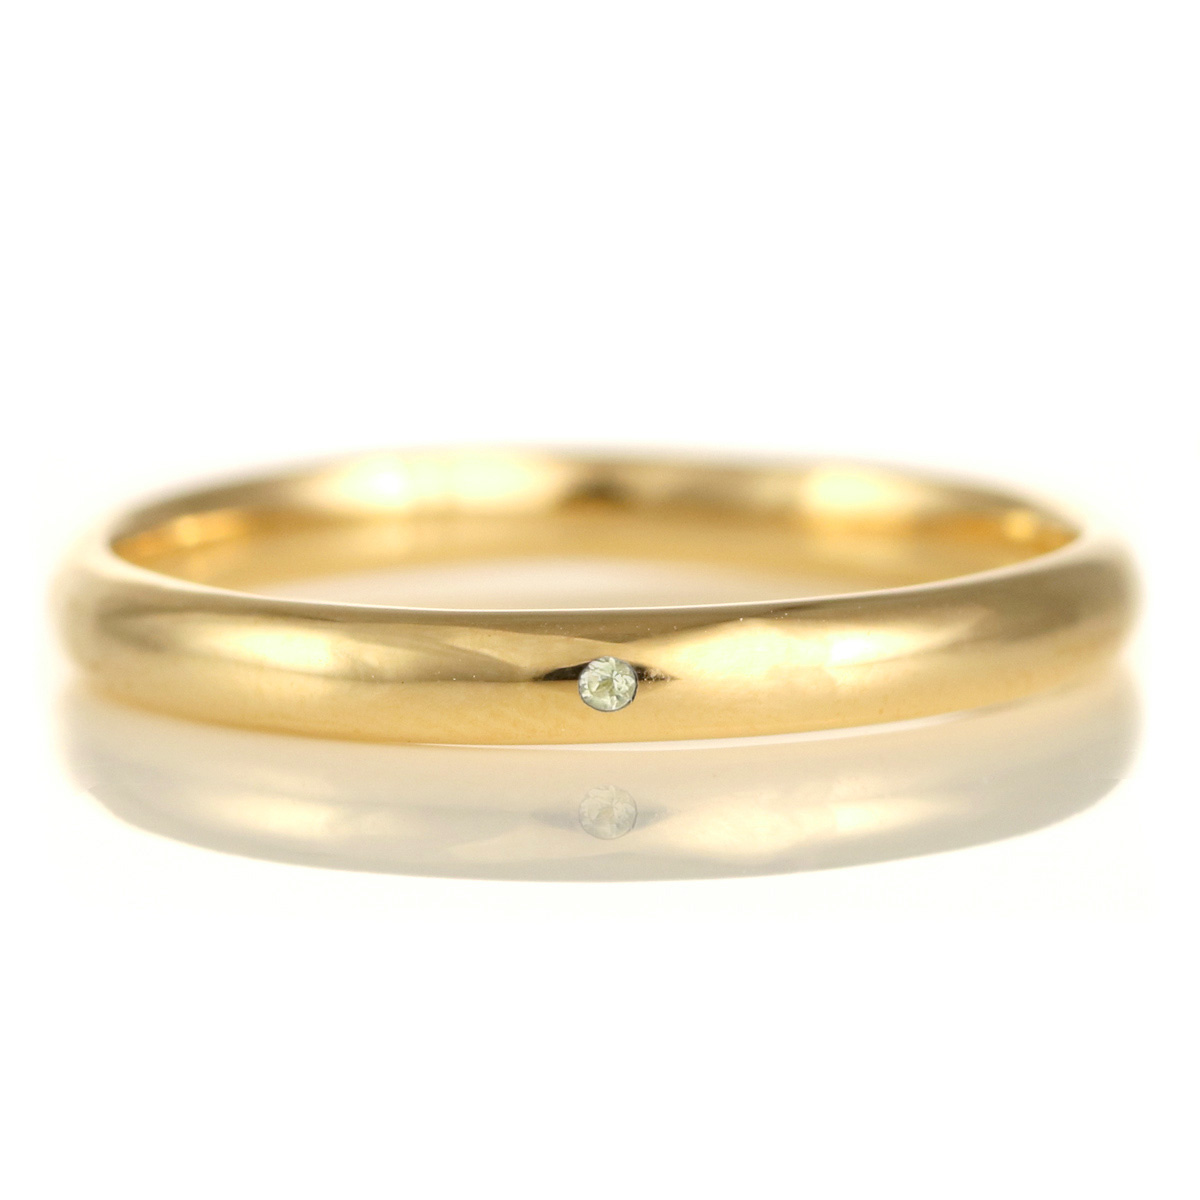 結婚指輪 マリッジリング 18金 ゴールド 甲丸 天然石 ペリドット